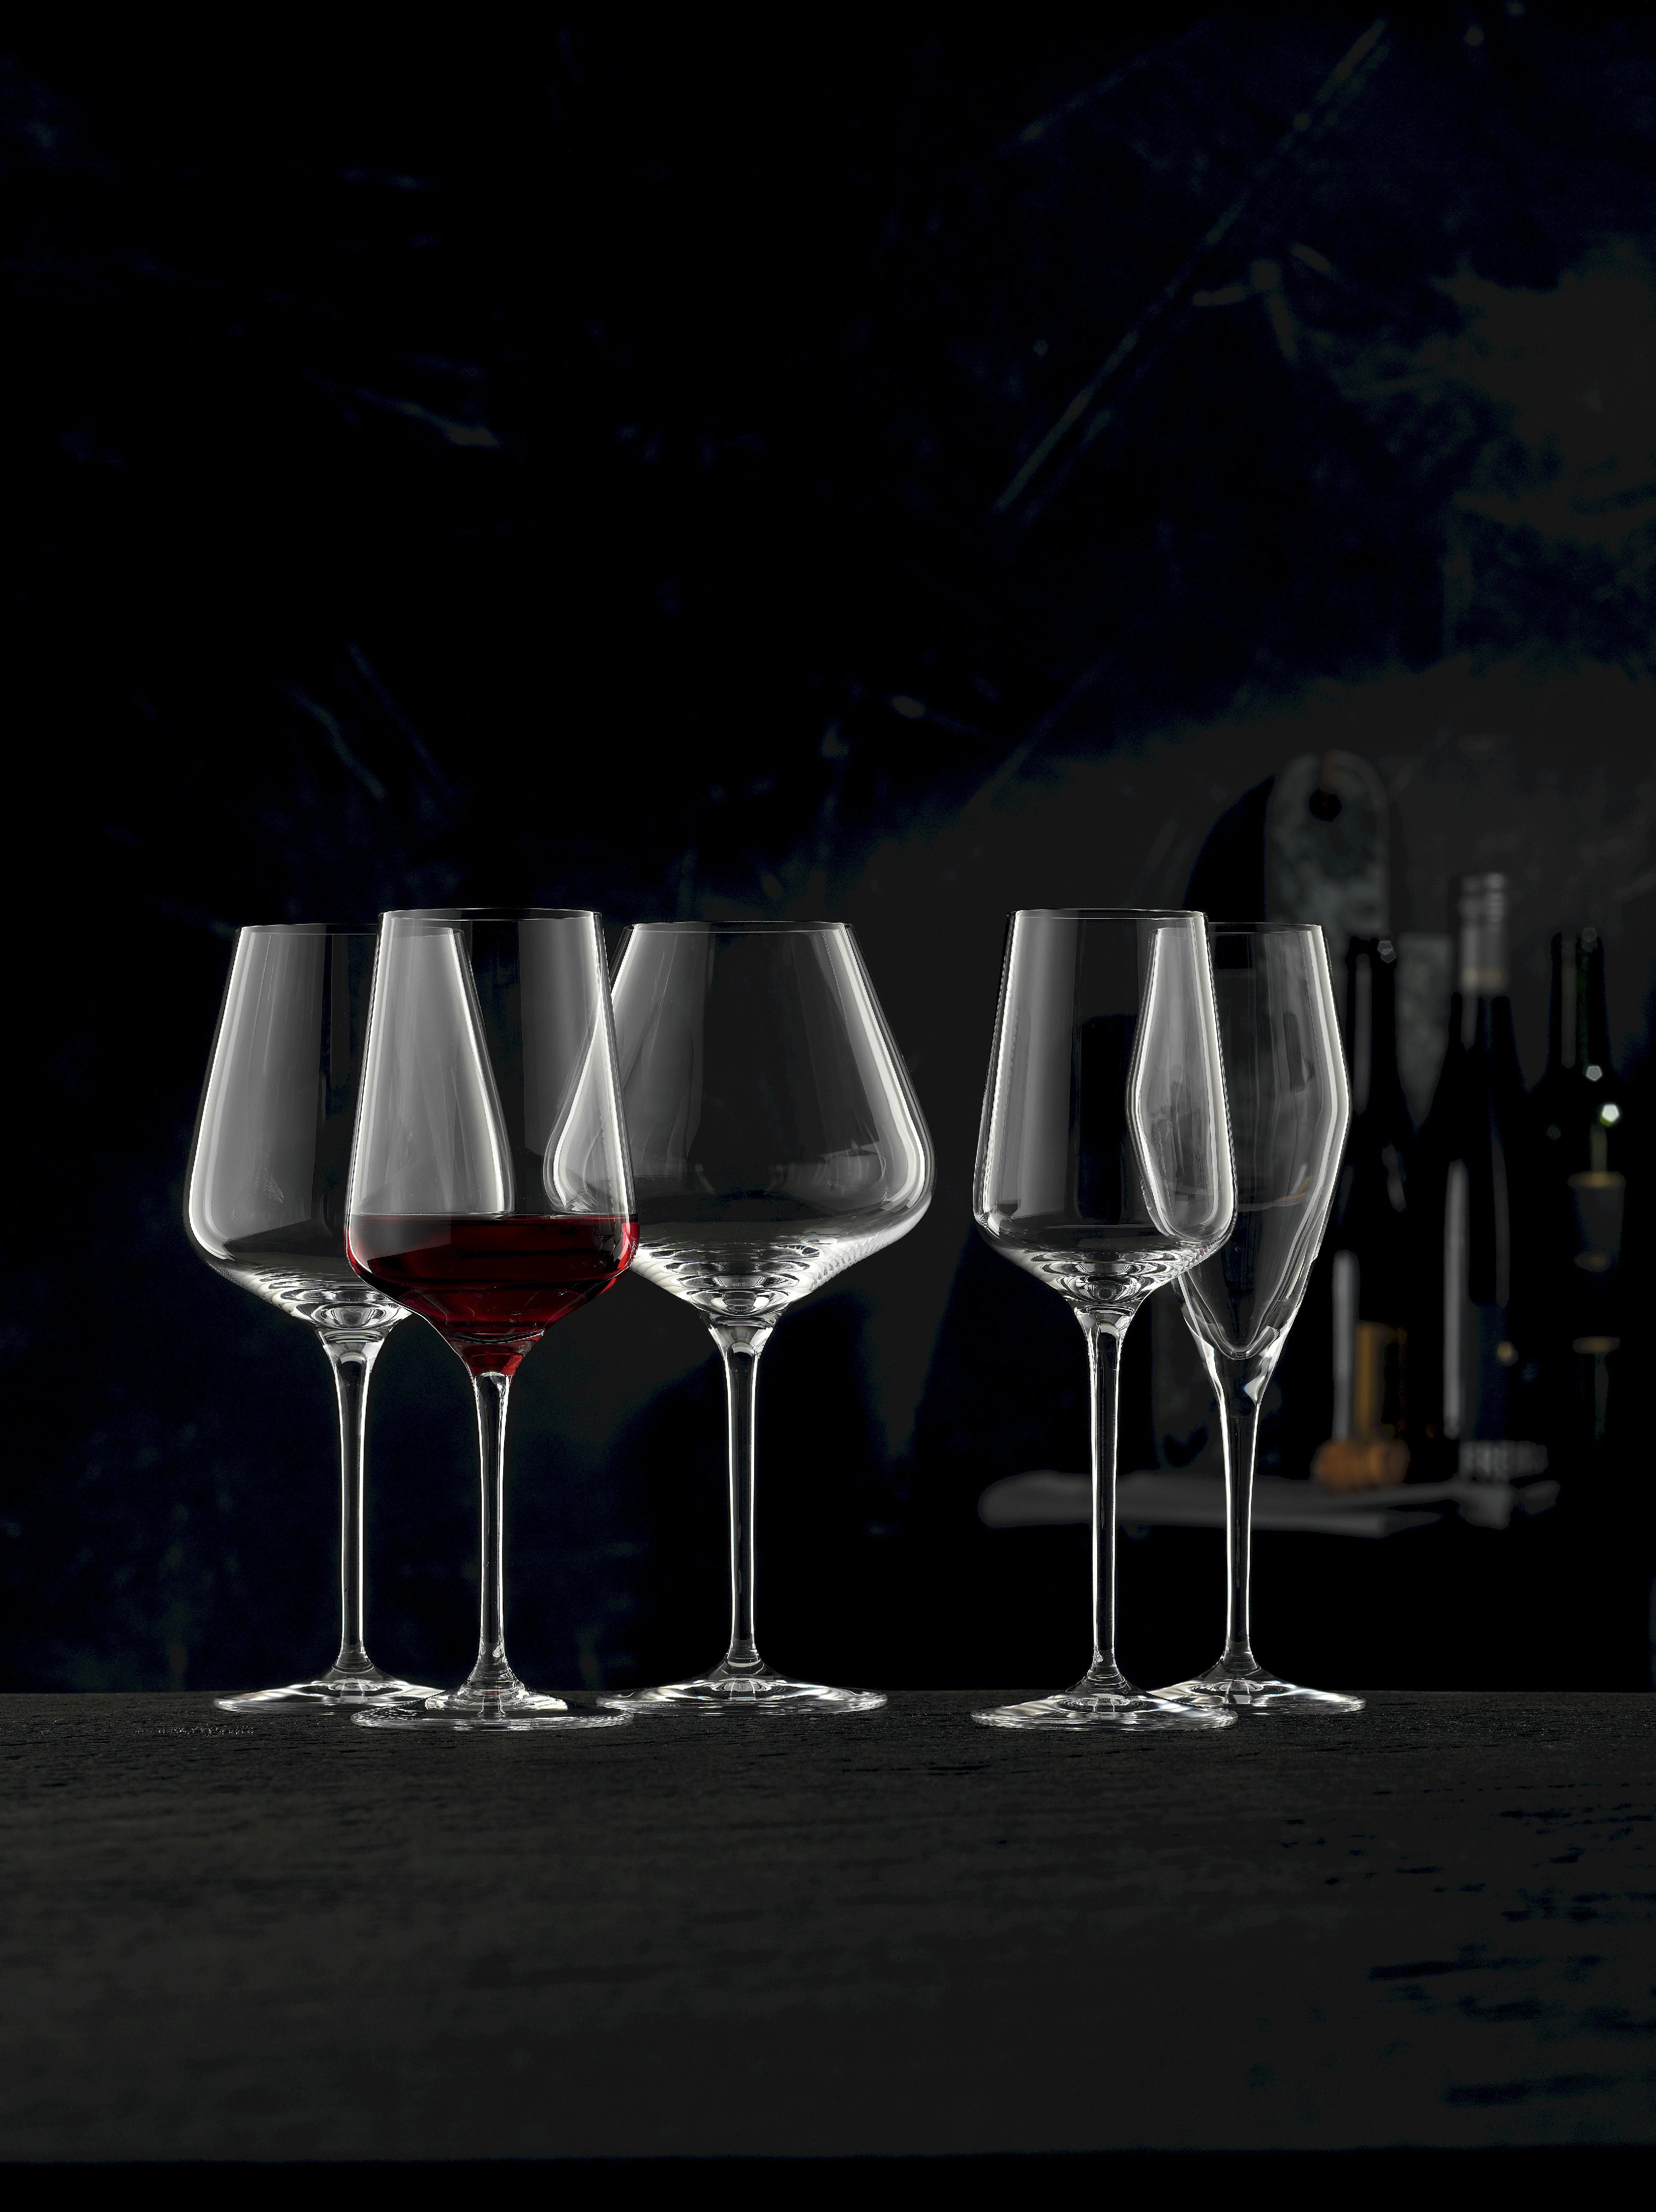 Nachtmann VI Nova Red Wine Glass 550 ml, set di 4